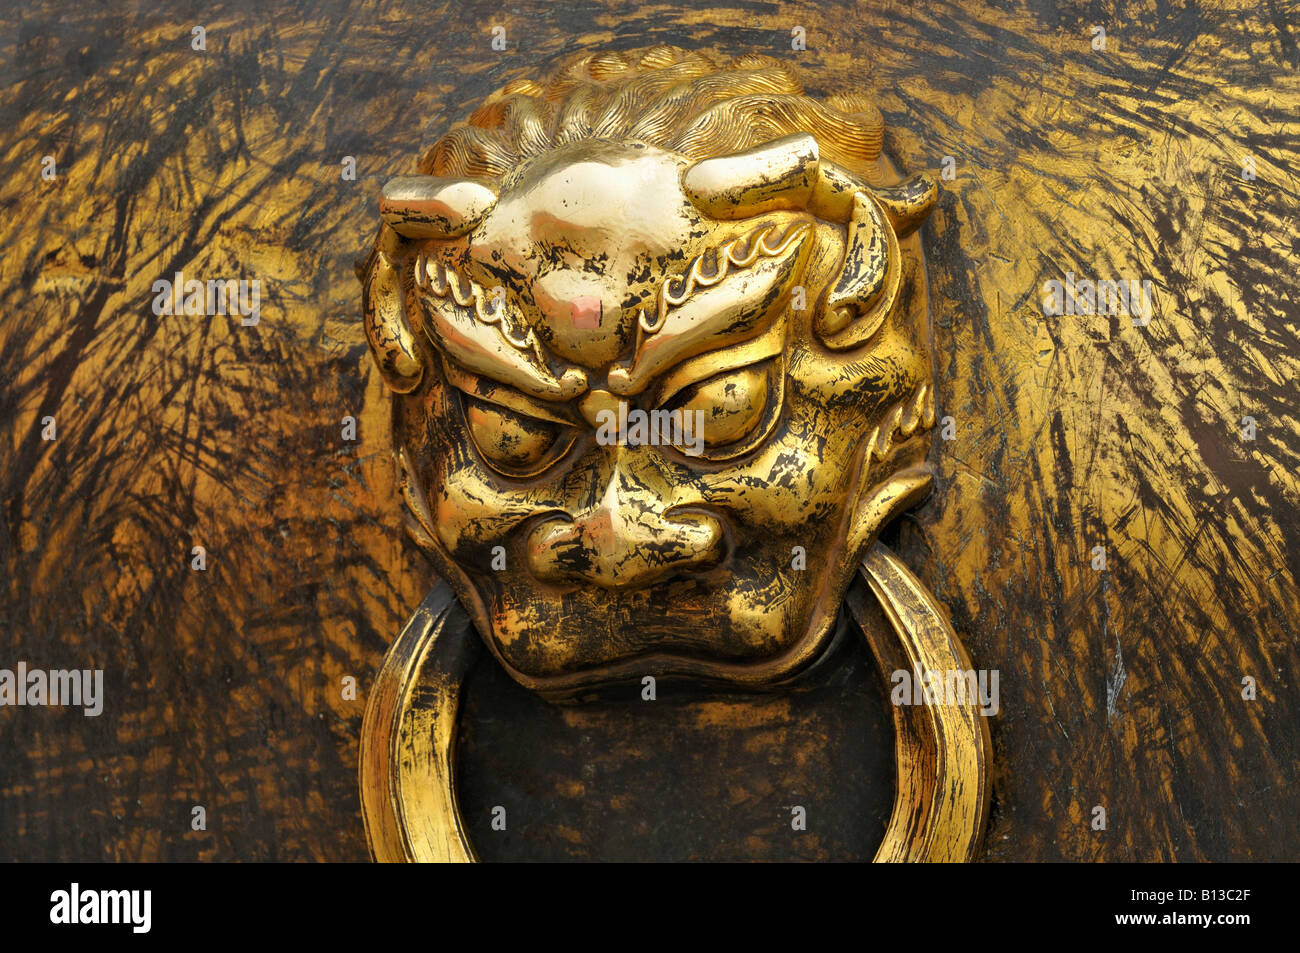 Griff aus Bronze vergoldete Urne oder Wasser Träger in Form von einem Teufel oder Gargoyle verbotene Stadt-Beijing-China Stockfoto